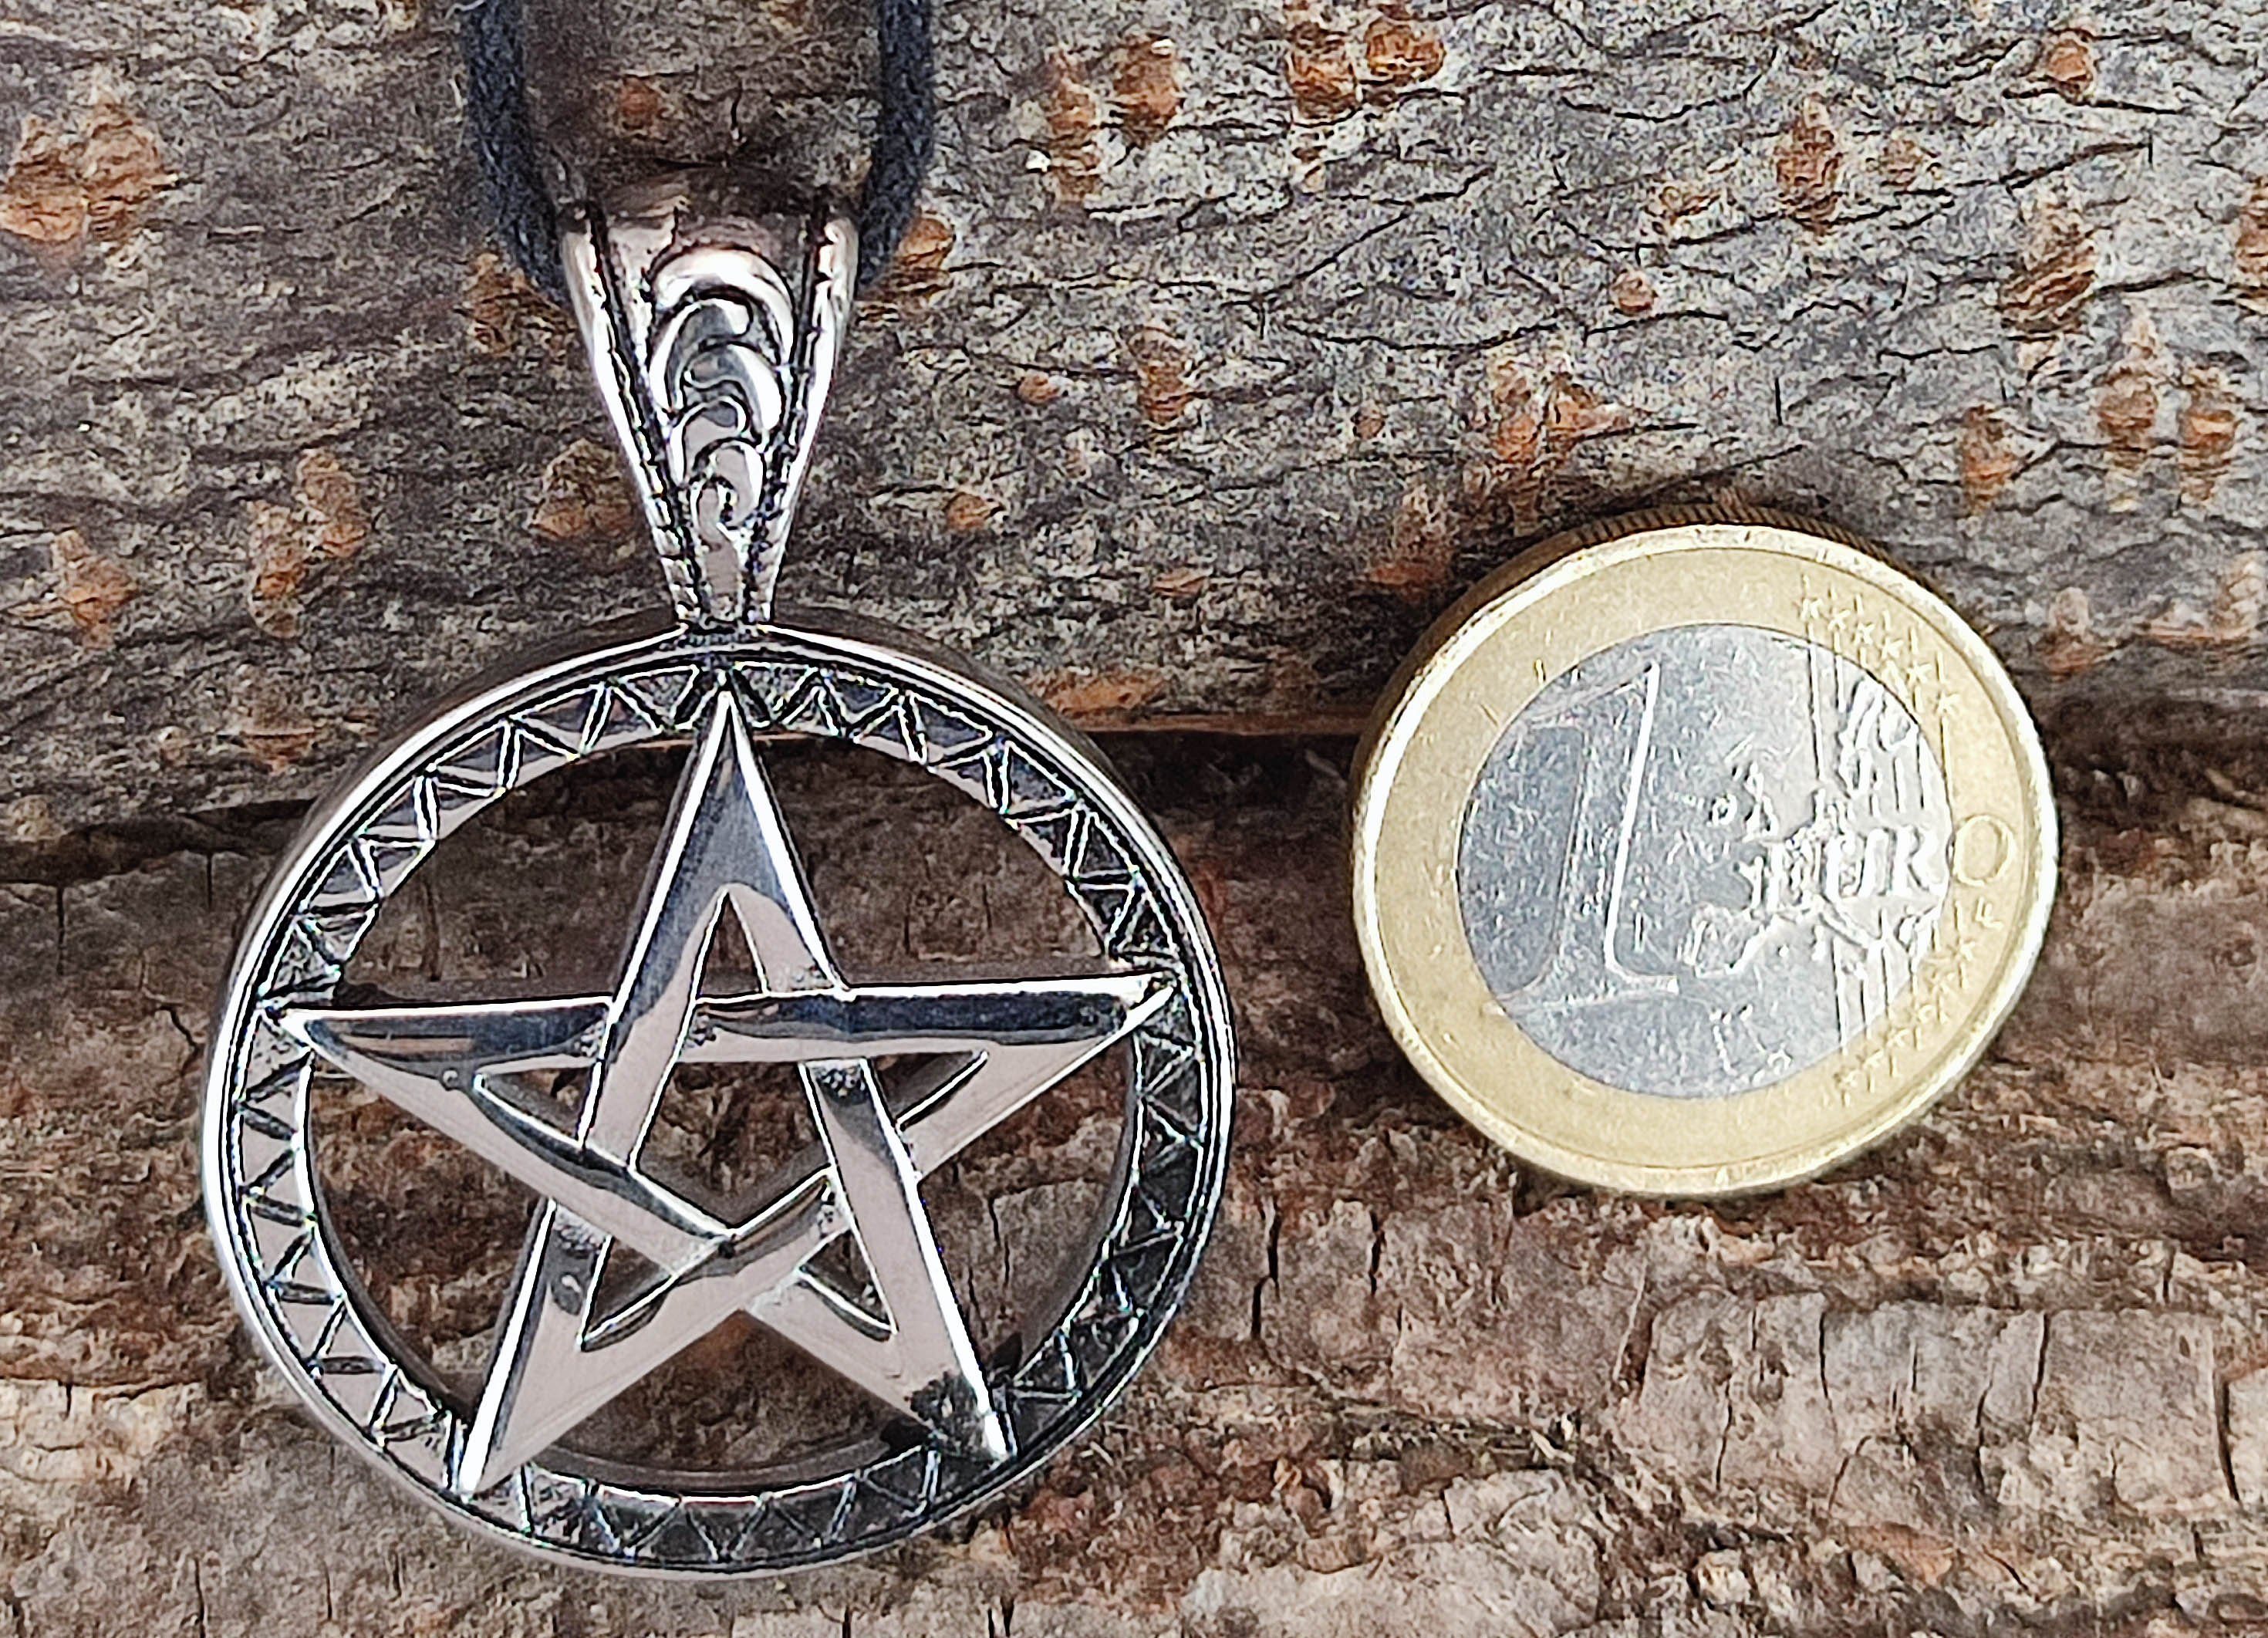 Schutz Edelstahl Amulett of Anhänger Kettenanhänger Pentakel Pentagramm Leather Pantagram Ring Kiss